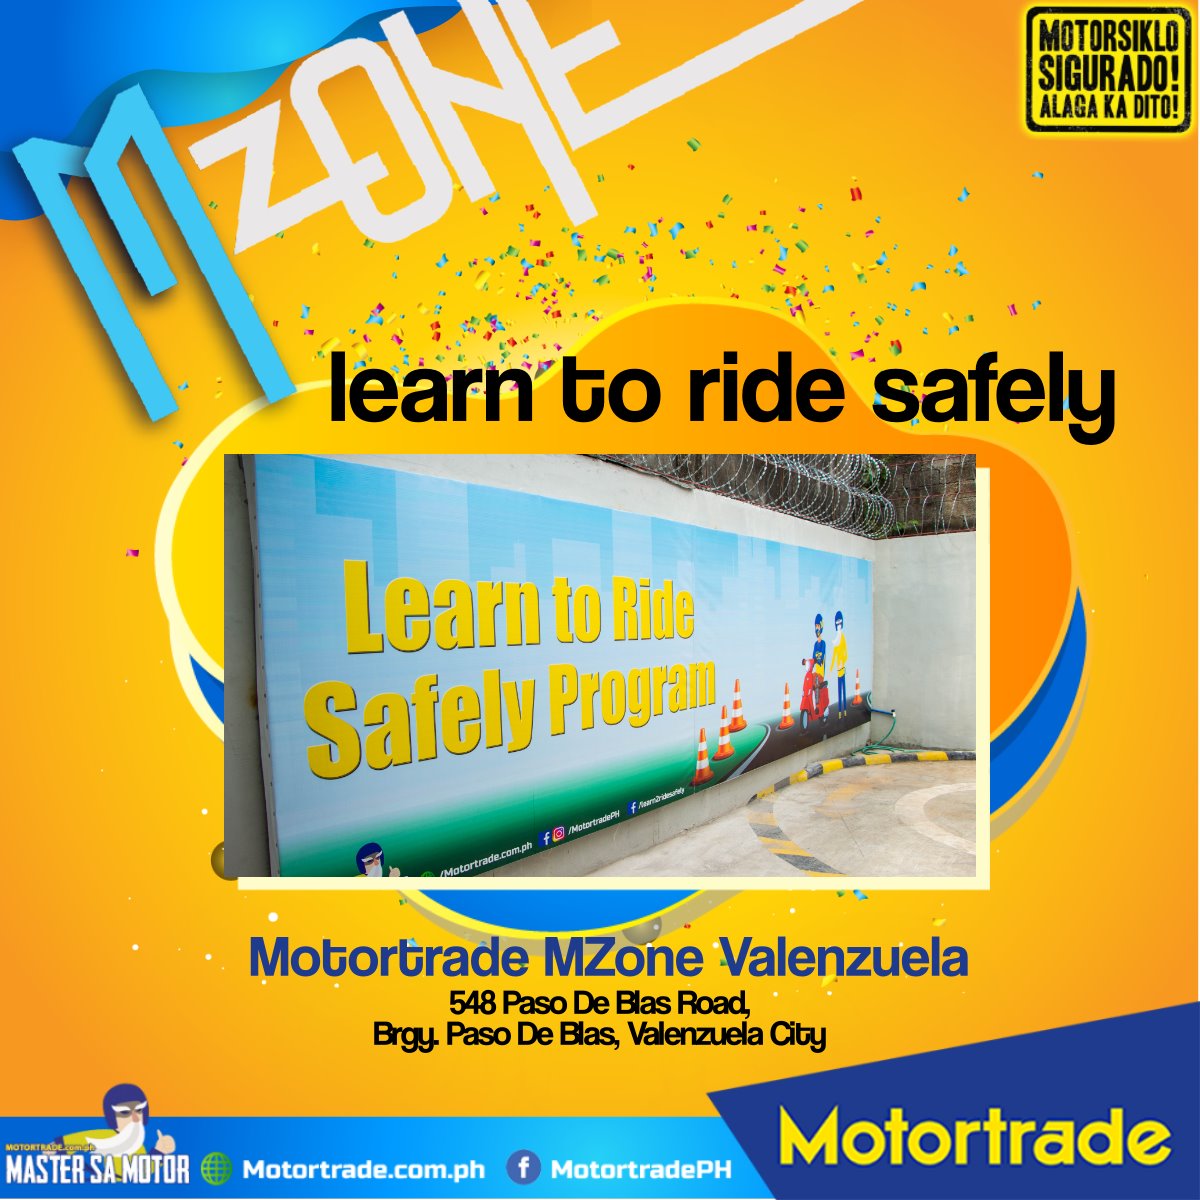 MZone-I Motortrade Philippines